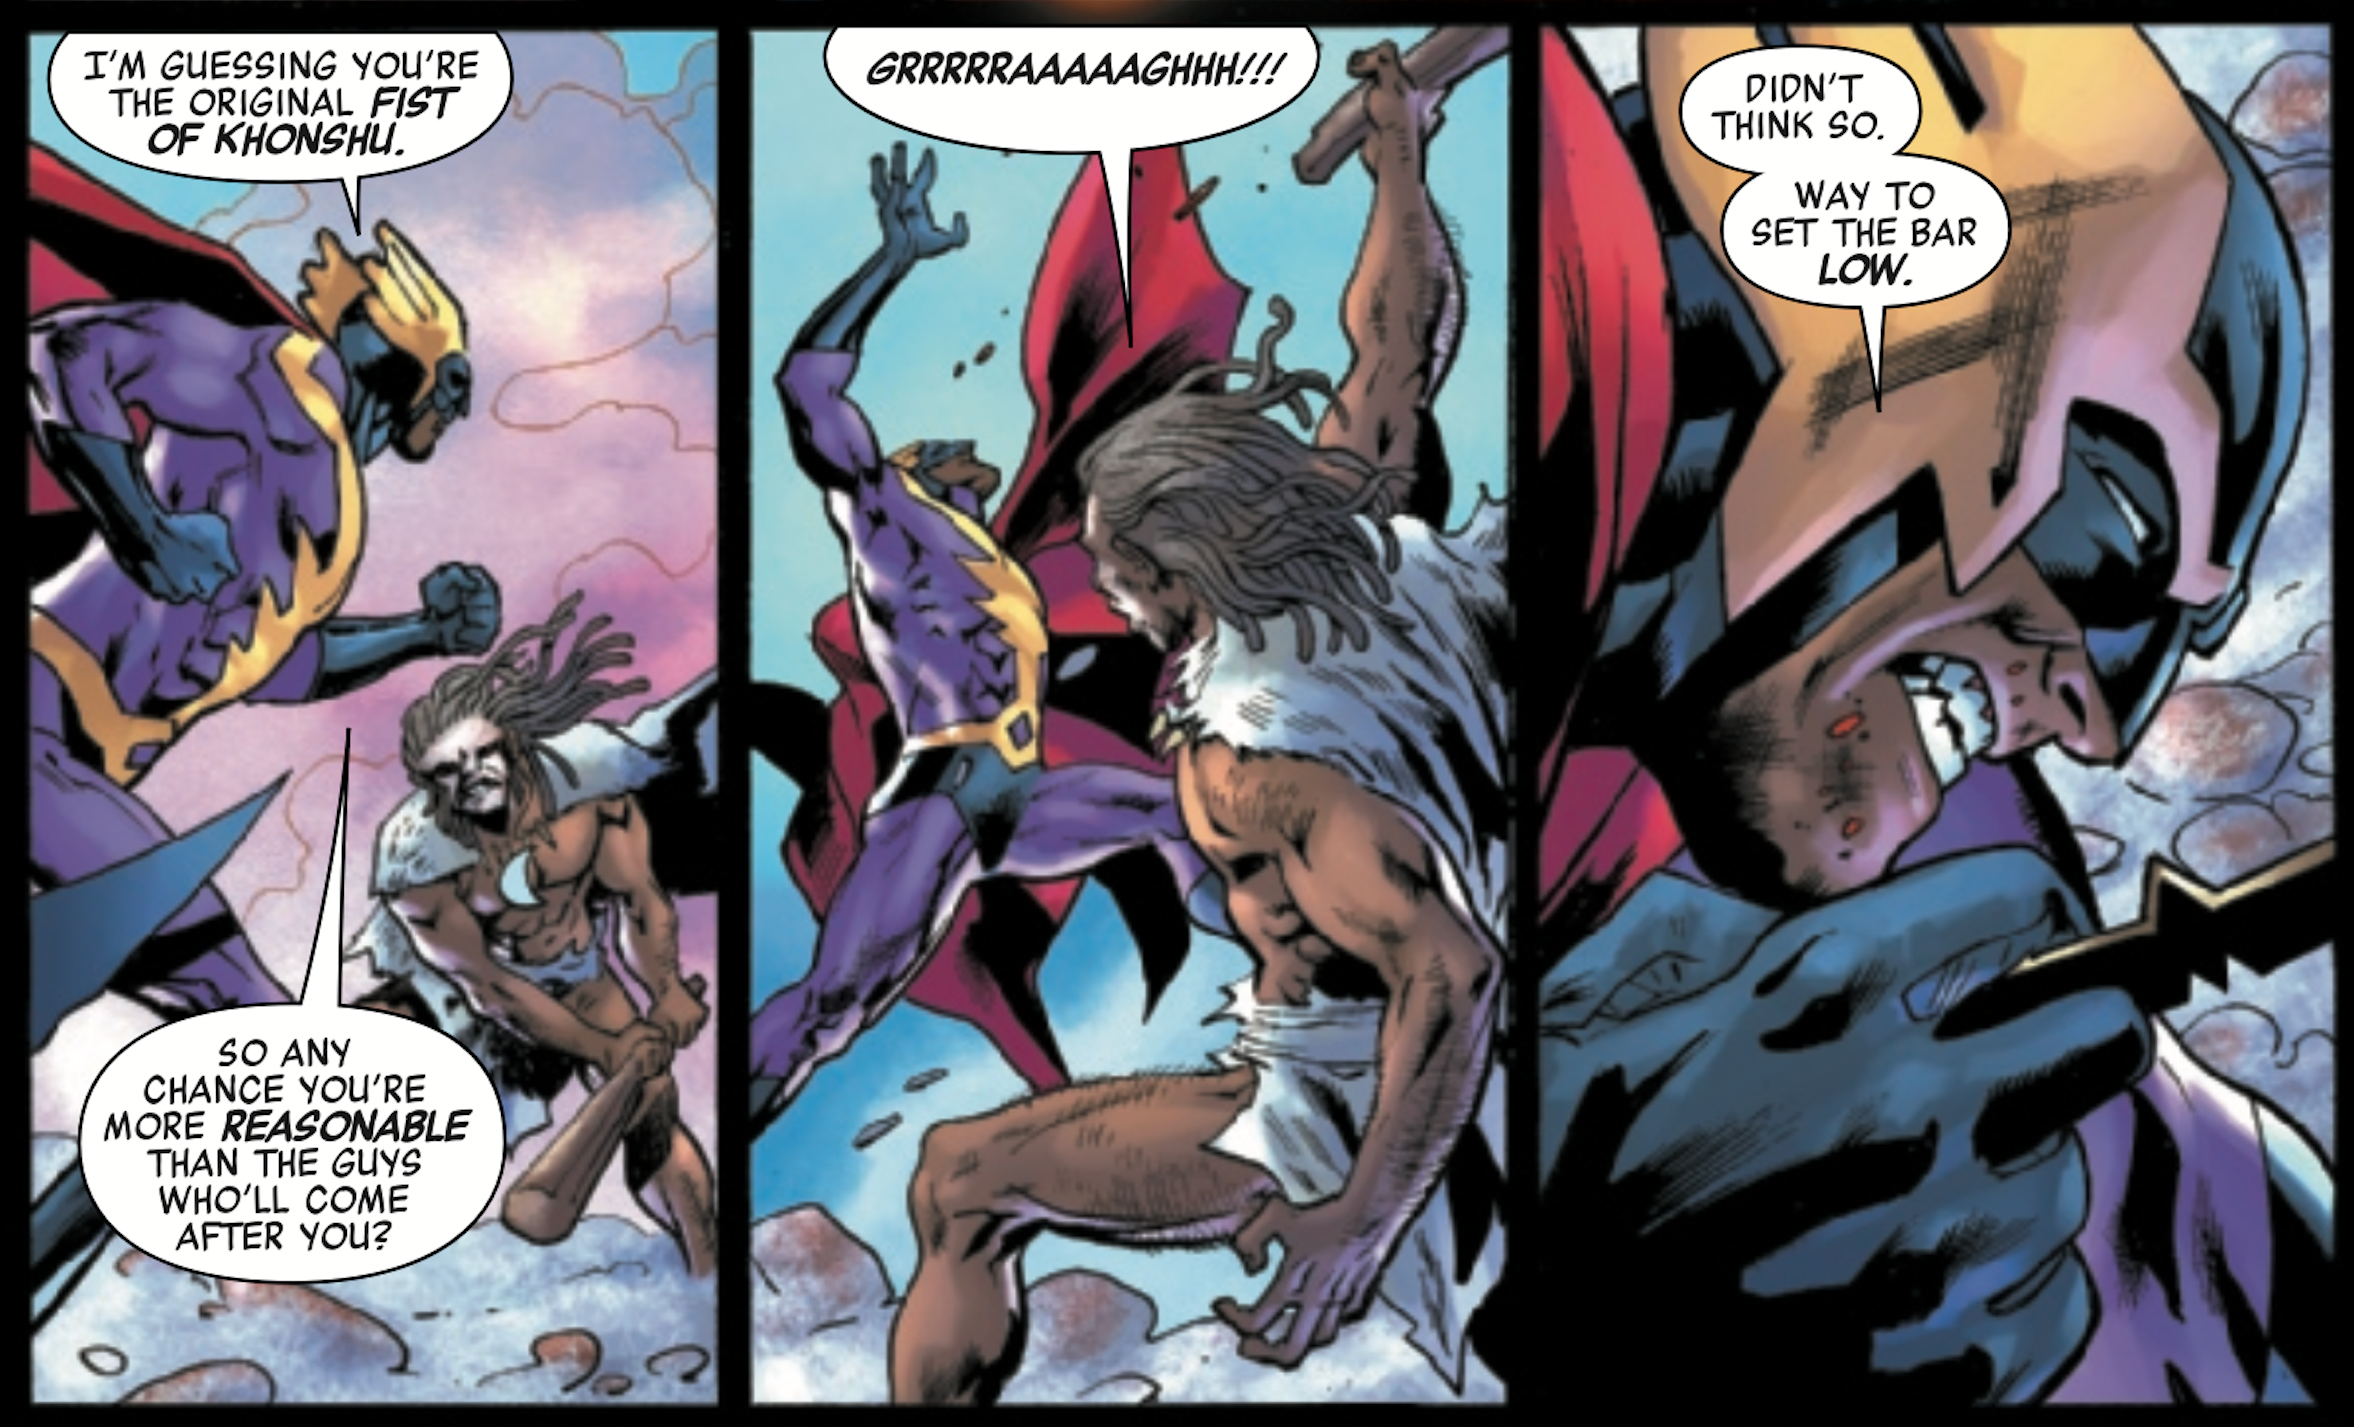 Moon Knight fights Nighthawk in Avengers